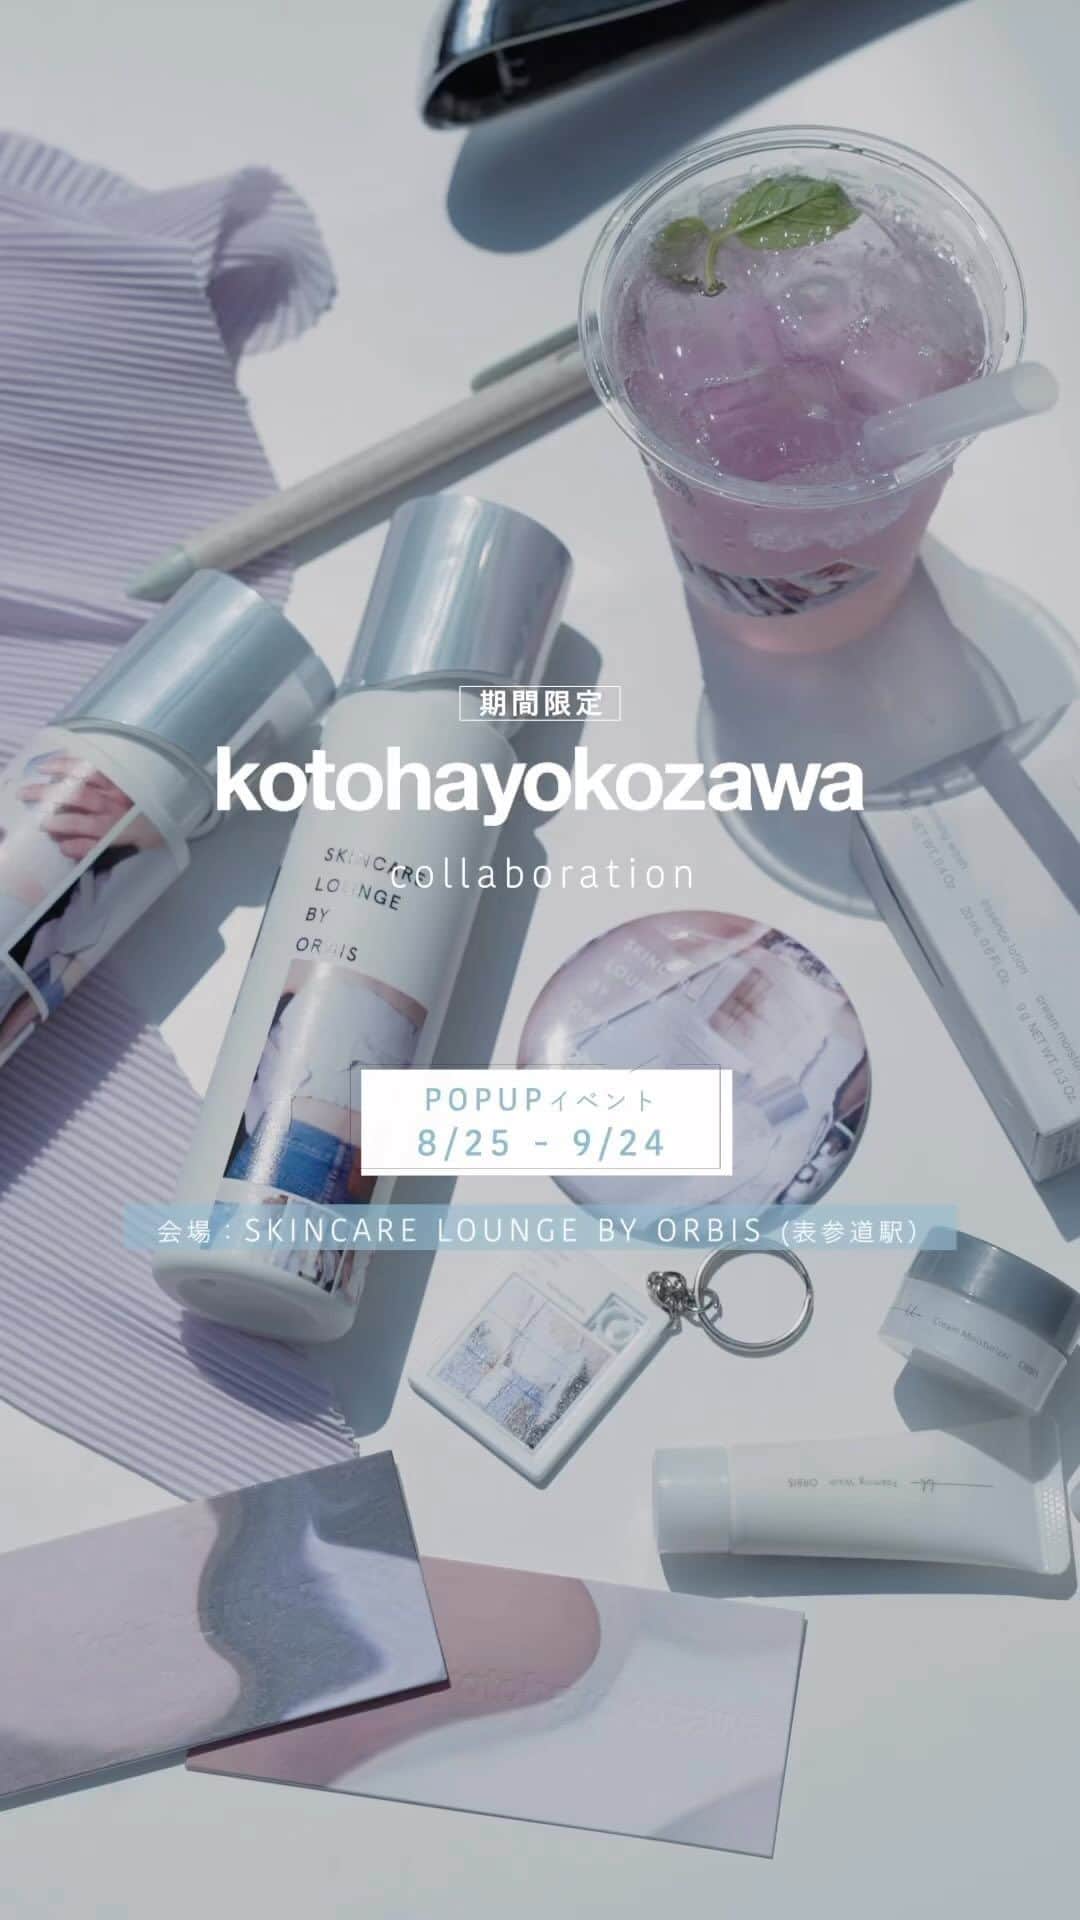 オルビス ORBIS official Instagramのインスタグラム：「. ＼POPUPイベント開催中✨／  『kotohayokozawa（コトハヨコザワ）』 とのコラボレーションを記念したPOPUPイベントを9月24日（日）まで開催します💁🏼  イベント限定でお買い求めいただけるコラボボトルとドリンクの他、予約なしで新商品を楽しくご体験いただける無料コンテンツをご用意しております。  ＼　期間限定コラボアイテムのご紹介／ ●店頭限定！コラボデザインの『CREATE BOTTLE』とオリジナルトライアルセット 『オルビスユー ドットシリーズ［医薬部外品］』の発売を記念し、オリジナルつめかえ用ボトルが作れる『CREATE BOTTLE』のサービスでは『kotohayokozawa』とのコラボデザインボトル２種を限定発売します。専用のギフトBOX でお渡ししておりますので、大切な方へのギフトとしてもぴったりです。  ●オリジナルトライアルセット 『オルビスユー ドットシリーズ』を気軽にお試しいただけるトライアルセットと、コラボデザインを施したオリジナルグッズ3種（ミラー、ステッカー、ペン）をセットにしたコラボ限定オリジナルトライアルセットも登場。  ●コラボドリンク『Escape Lilac Soda（エスケープ・ライラックソーダ）』 『JUICE BAR』では今回のコラボレーションをイメージしたライラックカラーのドリンクが期間限定で登場します。エルダーフラワーシロップの華やかな香りとぷるぷるの食感を楽しめるソーダドリンクです。  ＼予約不要！どなたでもお楽しみいただけるコンテンツ／ ここちよい空間の中で新商品を体感いただけるコンテンツです。 新発売の『オルビスユー ドットシリーズ』のハリ・透明感※を実際に見て・触れていただける体験コンテンツやタッチアップなど、ご自身のお肌に向き合えるコンテンツが予約不要で体験いただけます。 ※ うるおいによる  セット購入特典🎁 ●『オリジナルパズルキーホルダー』 コラボドリンクと『CREATE BOTTLE』または『コラボ限定オリジナルトライアルセット』をご購入いただく場合、セット価格として200円オフでご購入いただける他、本イベント限定のオリジナルパズルキーホルダーをプレゼントします。 ※なくなり次第終了  『kotohayokozawa』コラボレーションPOPUPイベント ========================================= 開催期間： 2023年8月25日（金）～2023年9月24日（日） 会場：『SKINCARE LOUNGE BY ORBIS』 営業時間：10:00~20:00 ▼詳細はこちら https://www.orbis.co.jp/skincarelounge/news/2023073192.html ========================================= #kotohayokozawa #オルビスユードット #CREATEBOTTLE #SKINCARELOUNGEBYORBIS #スキンケアラウンジバイオルビス #SKINCARELOUNGE #スキンケアラウンジ #ORBIS #オルビス #オルビスユー #自分の肌を知るための場所 #美肌ケア #美肌レシピ #スキンケア #表参道カフェ #青山カフェ #映えスポット #映え写真 #癒しの時間 #癒しスポット #乾燥対策 #保湿ケア #プレゼント #ギフト」